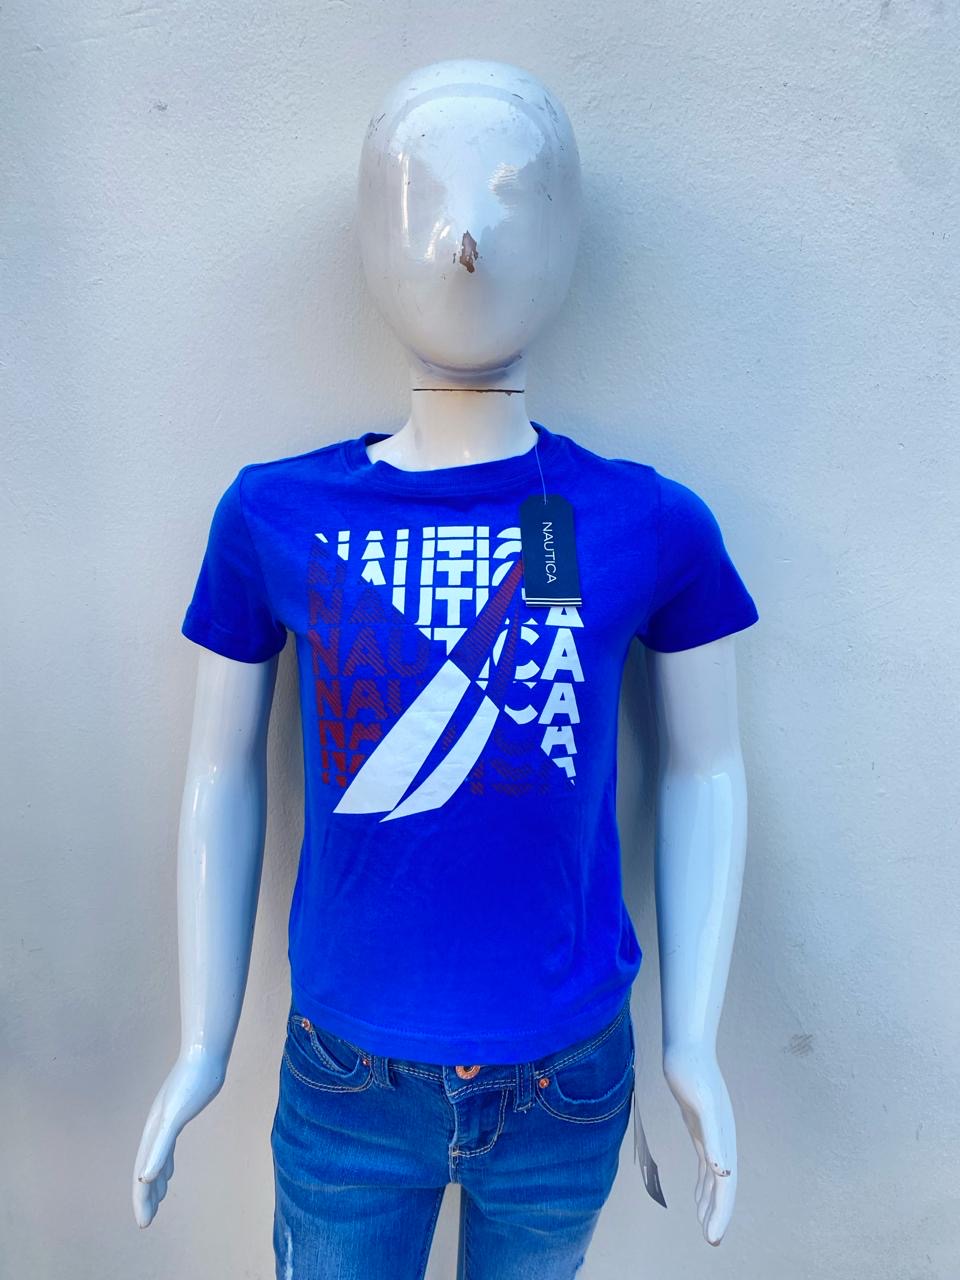 T-shirt Nautica original, azul con logotipo de la marca en blanco y rojo.